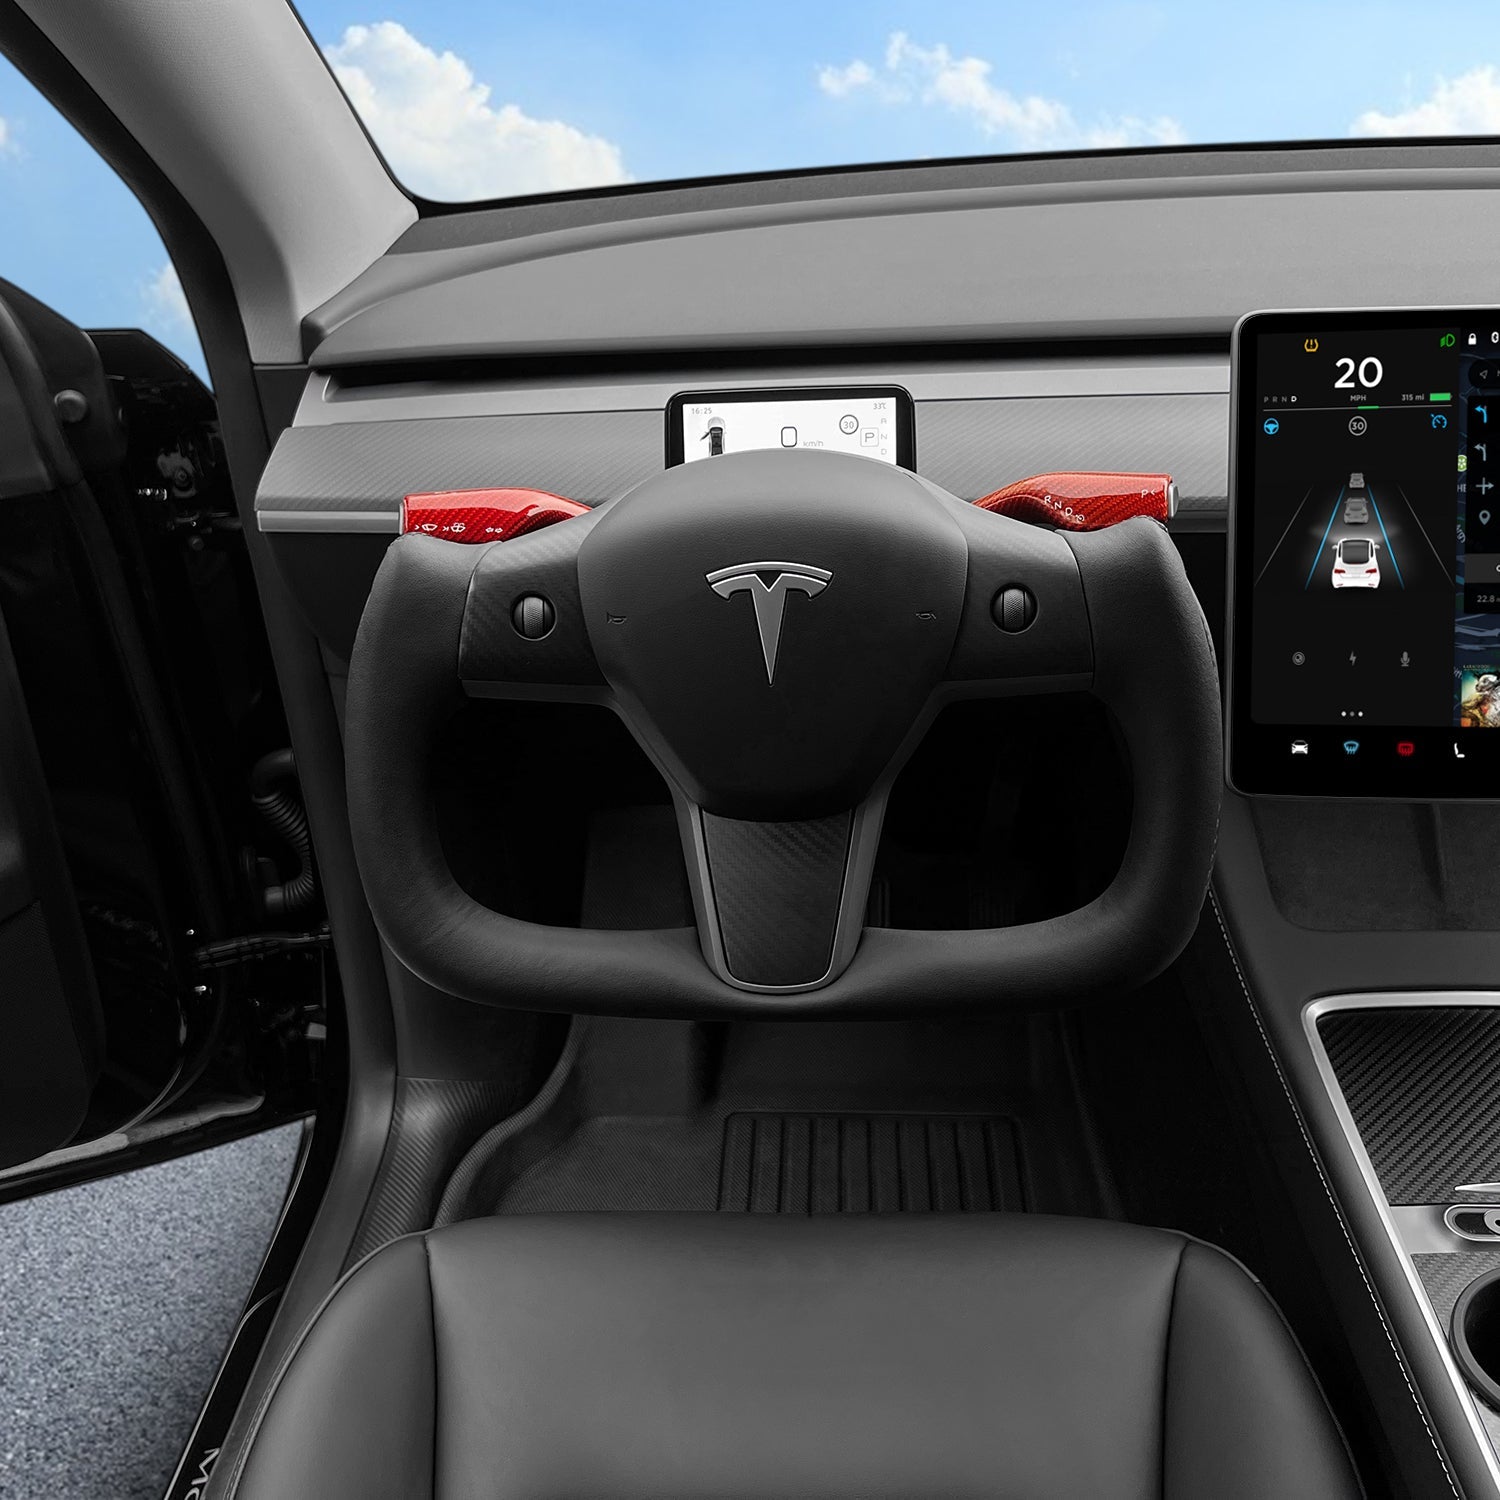 Verkauf! Tesery Yoke Lenkrad für Tesla Model 3/YBB Style 37 ~